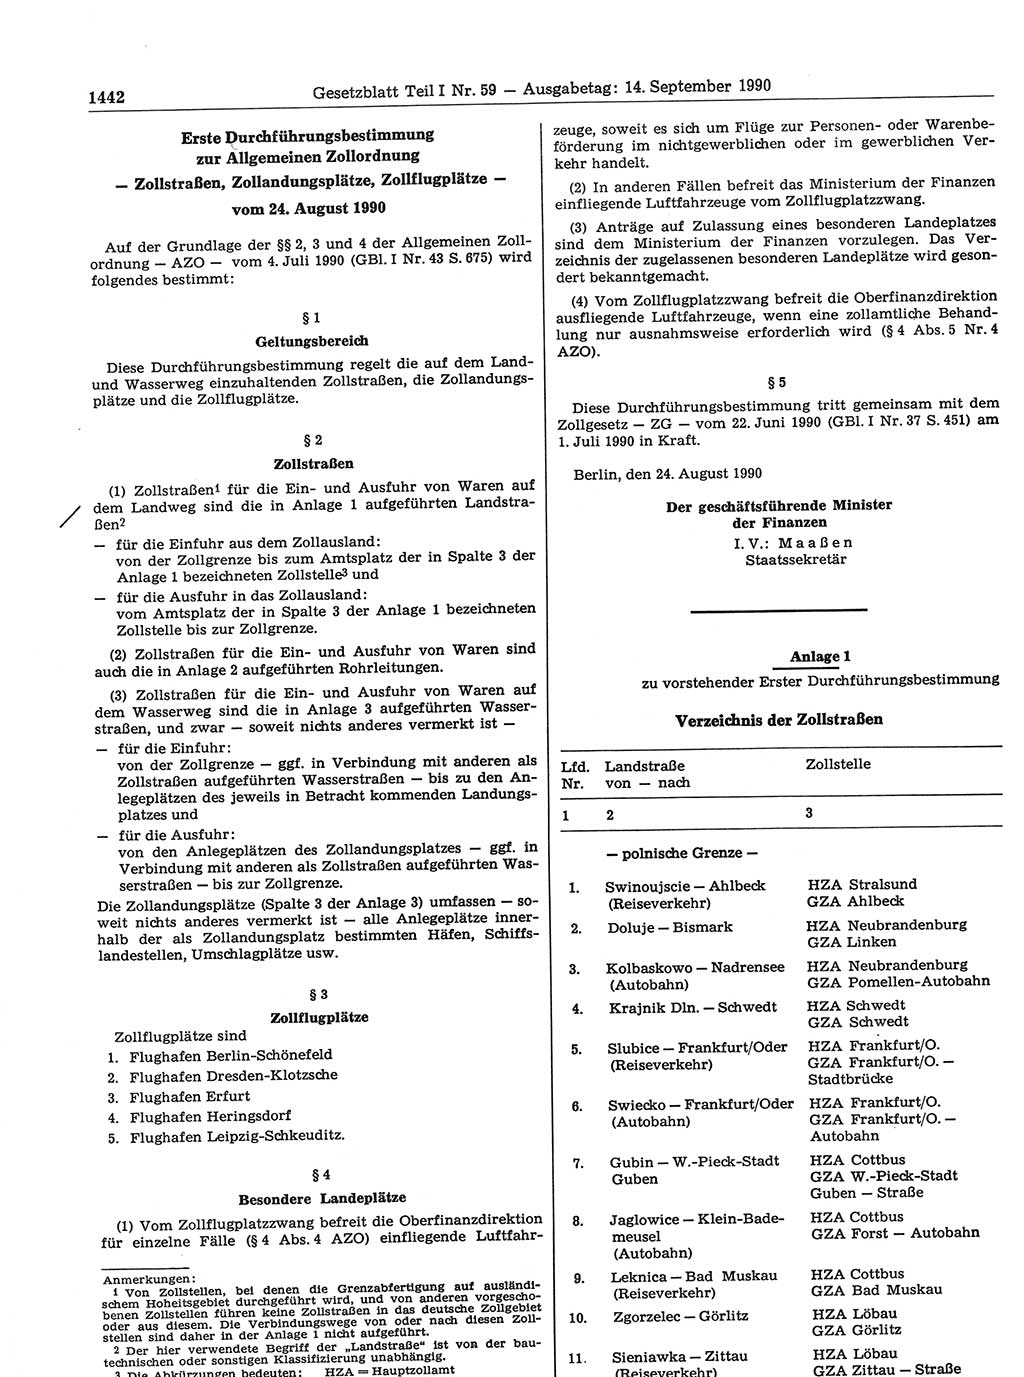 Gesetzblatt (GBl.) der Deutschen Demokratischen Republik (DDR) Teil Ⅰ 1990, Seite 1442 (GBl. DDR Ⅰ 1990, S. 1442)